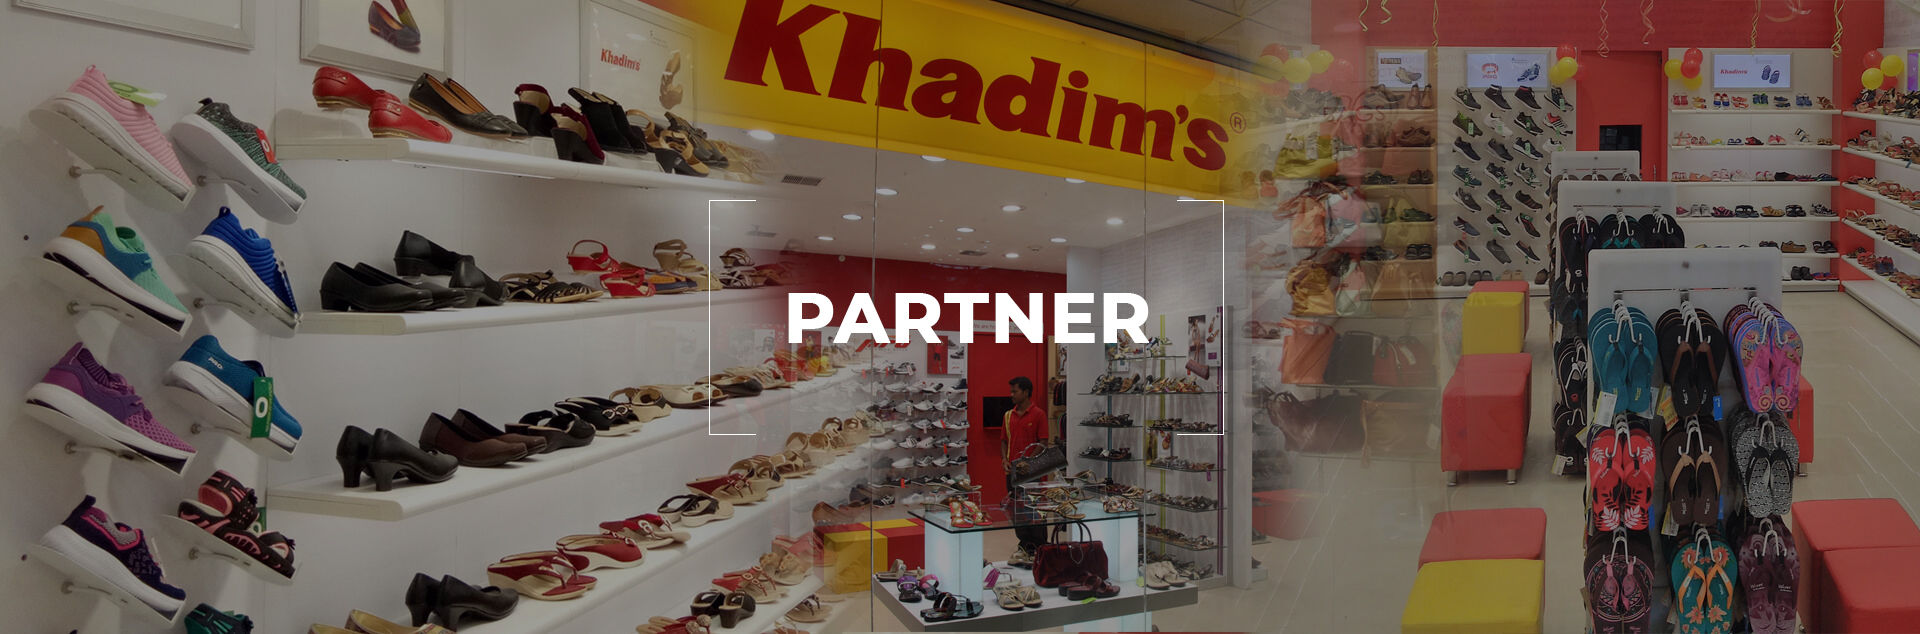 khadims shoe shop